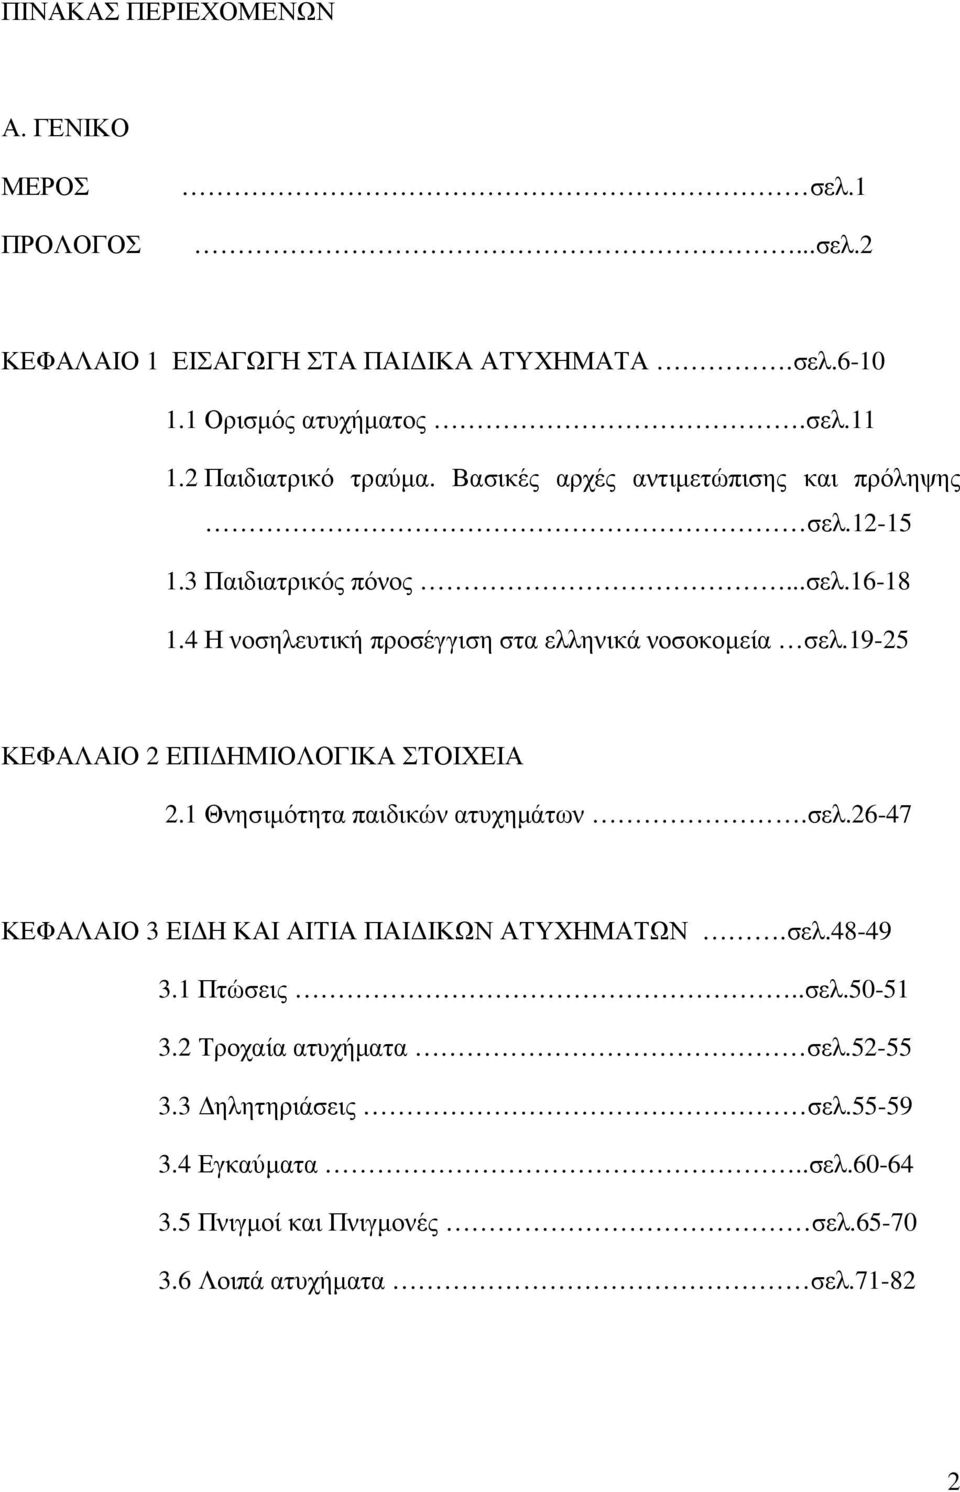 4 Η νοσηλευτική προσέγγιση στα ελληνικά νοσοκοµεία σελ.19-25 ΚΕΦΑΛΑΙΟ 2 ΕΠΙ ΗΜΙΟΛΟΓΙΚΑ ΣΤΟΙΧΕΙΑ 2.1 Θνησιµότητα παιδικών ατυχηµάτων.σελ.26-47 ΚΕΦΑΛΑΙΟ 3 ΕΙ Η ΚΑΙ ΑΙΤΙΑ ΠΑΙ ΙΚΩΝ ΑΤΥΧΗΜΑΤΩΝ.